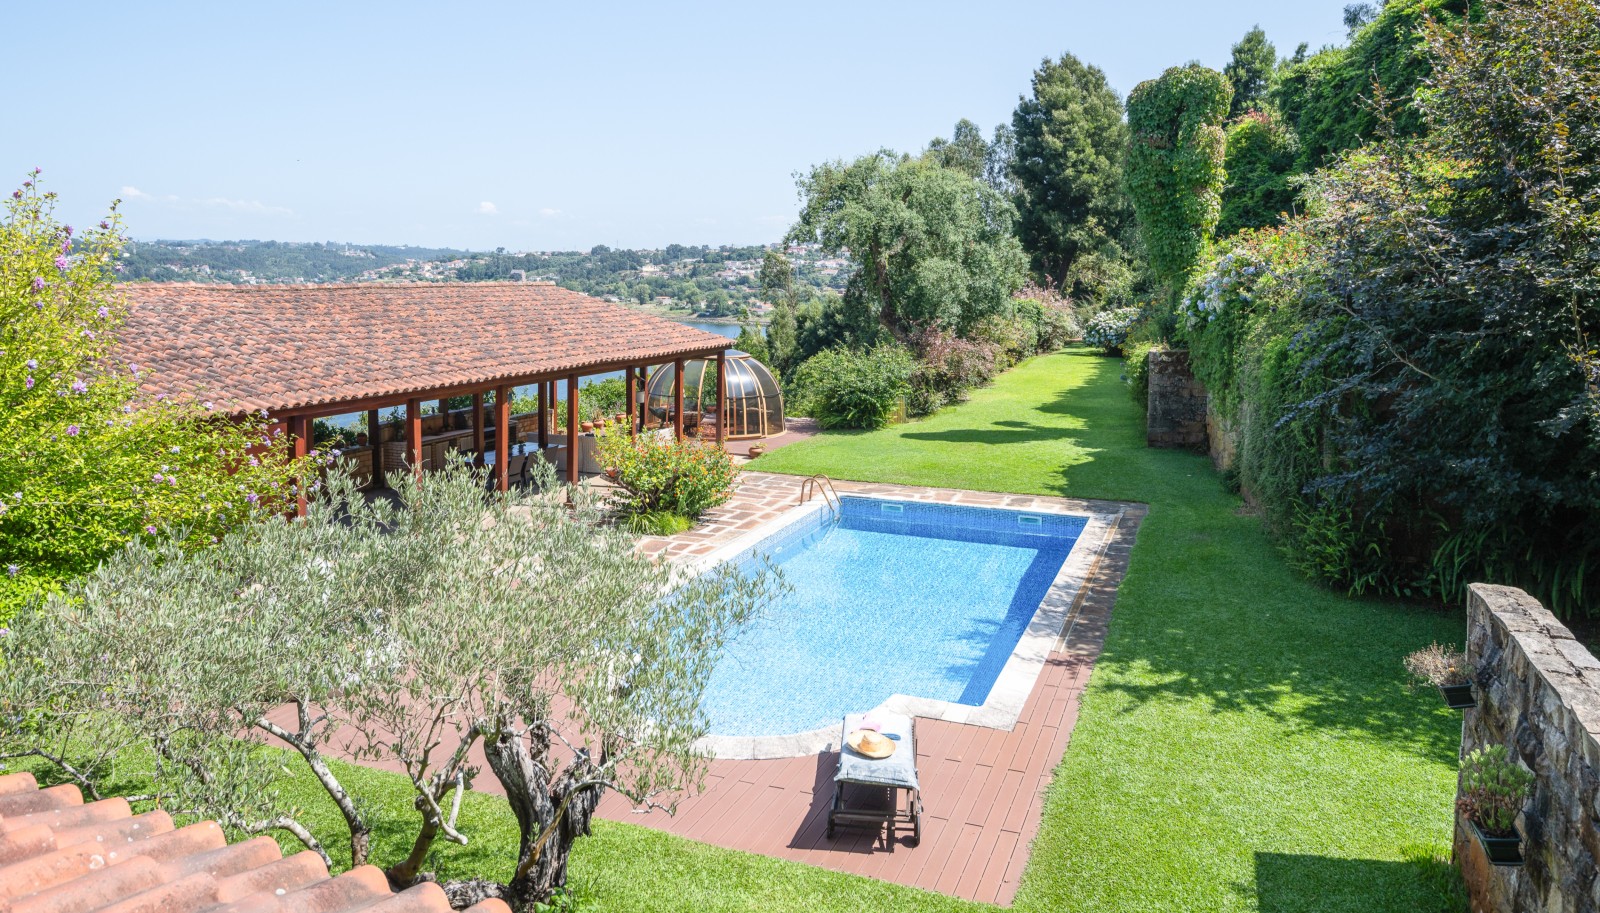 Grundstück mit Garten, Schwimmbad und Flussblick, zu verkaufen, in V. N. Gaia, Portugal. N. Gaia, Portugal_239648